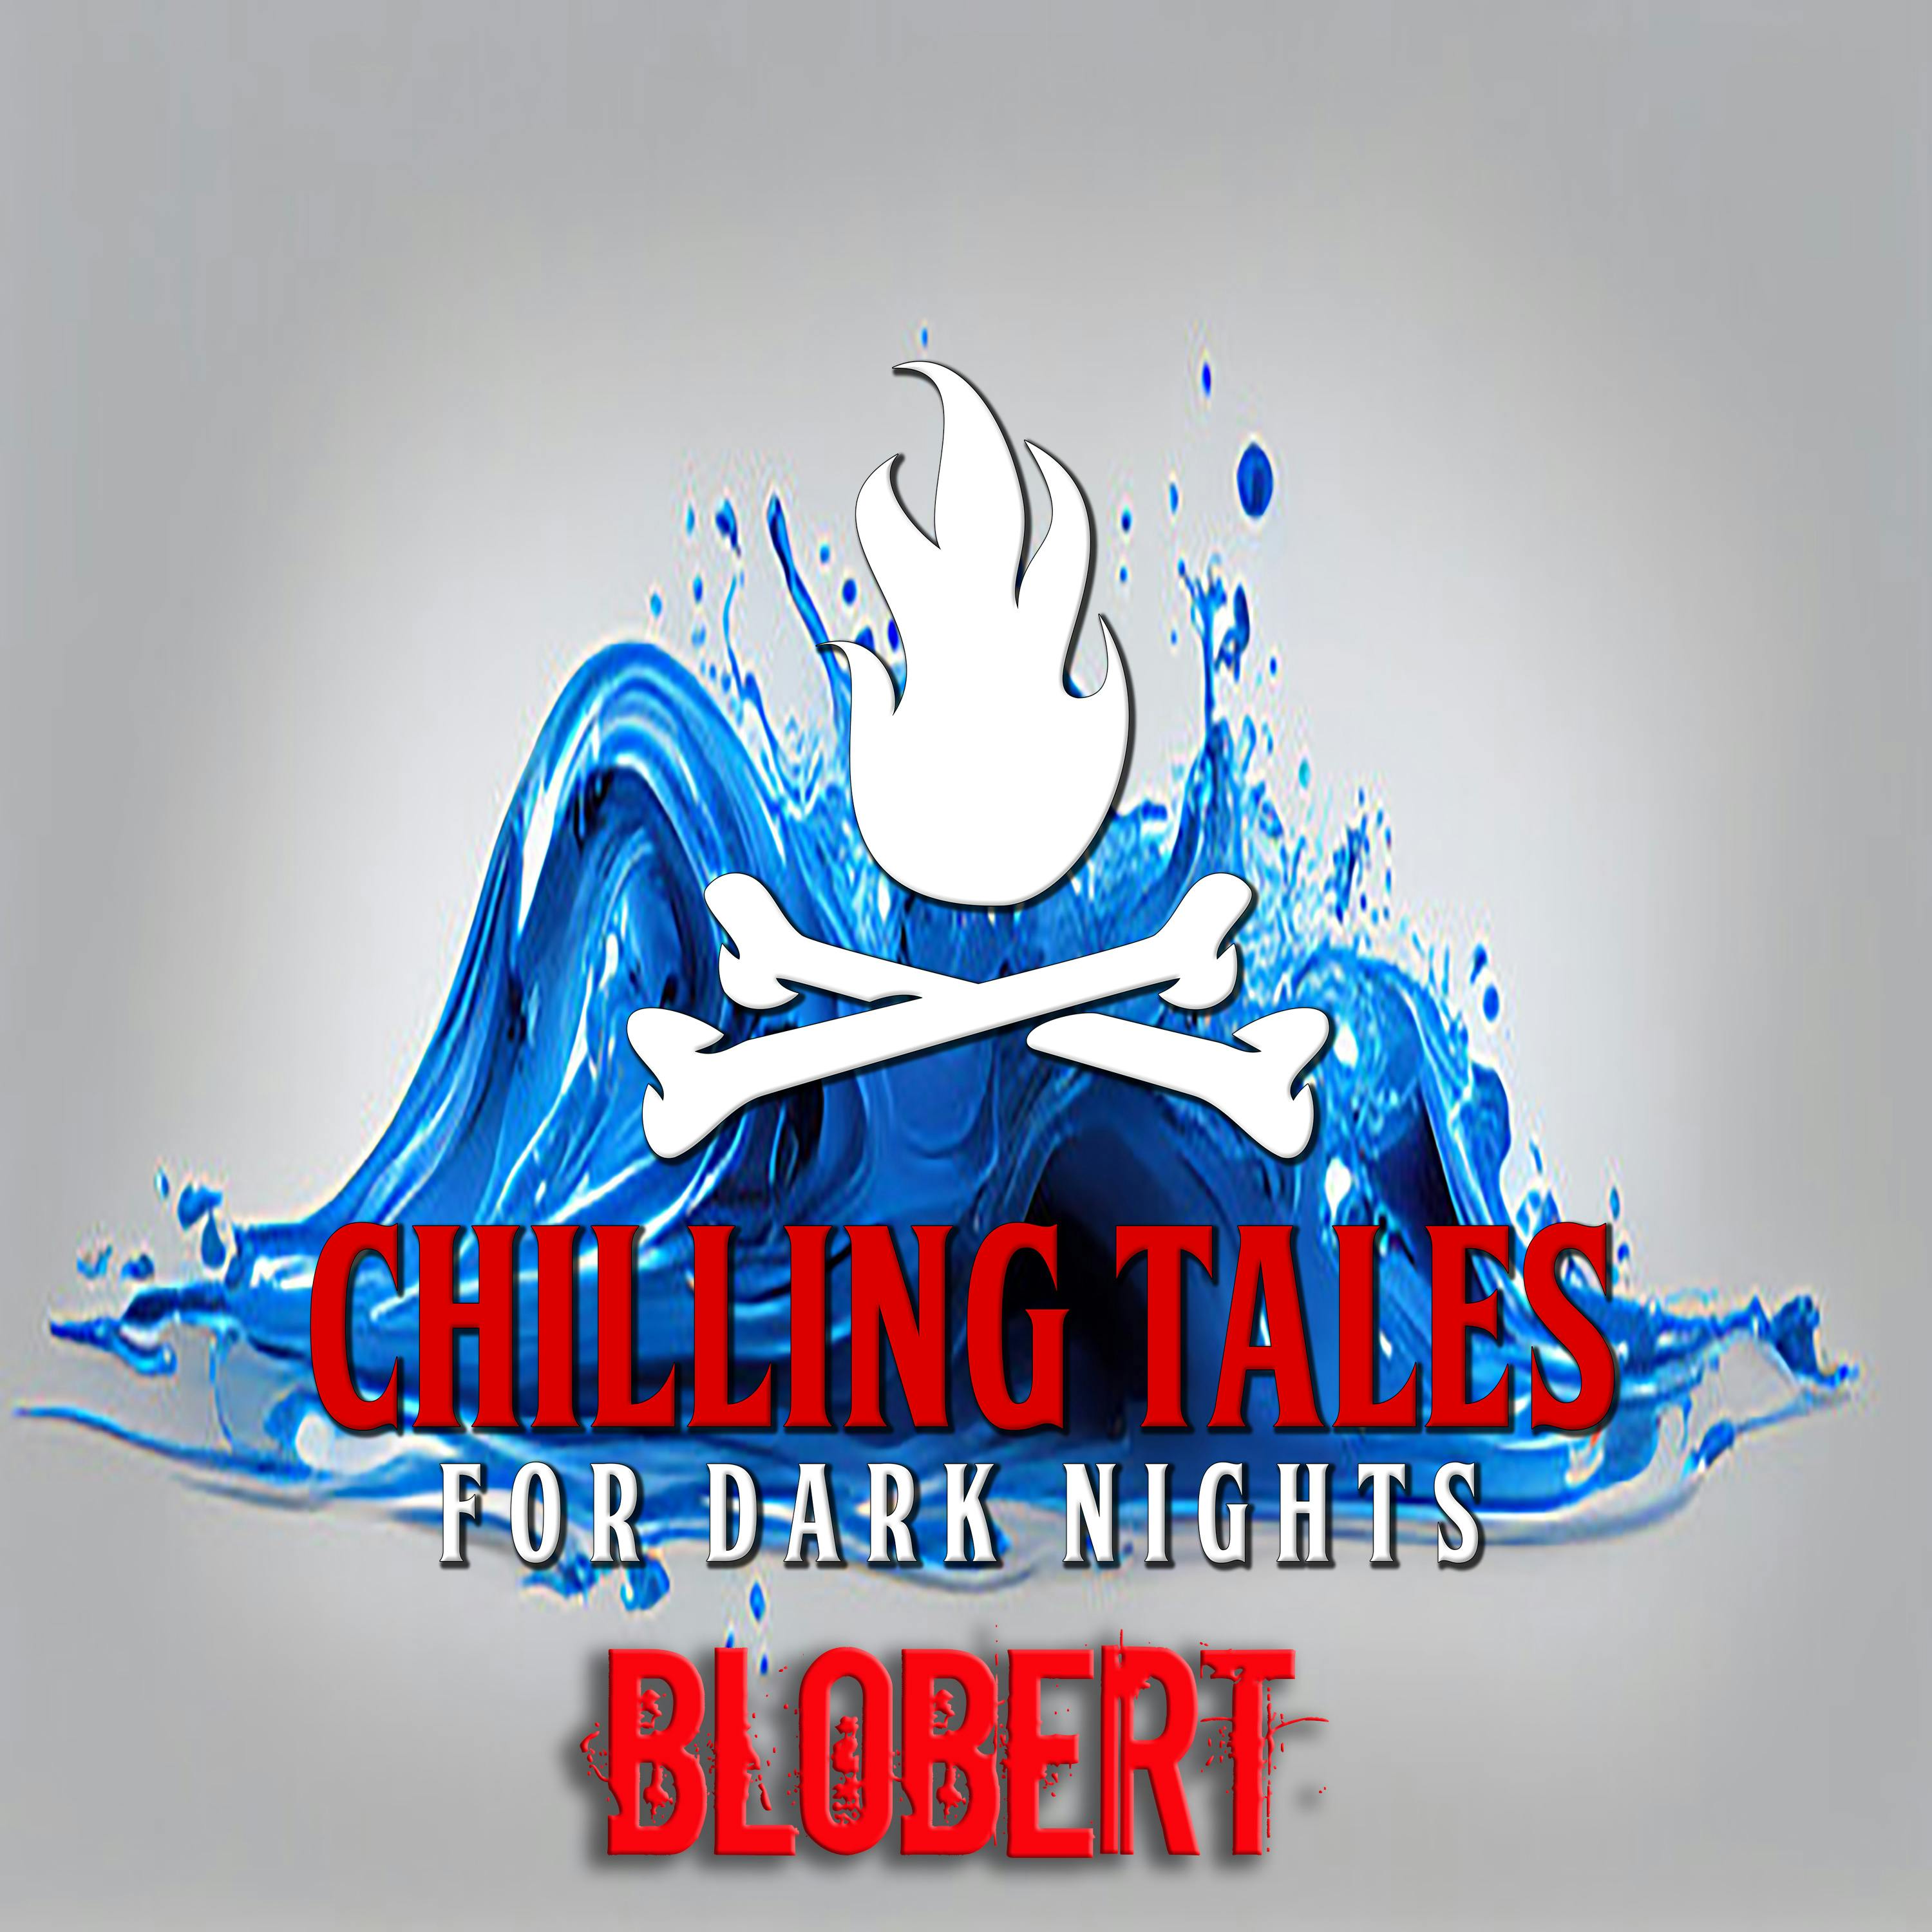 189: Blobert - Chilling Tales for Dark Nights